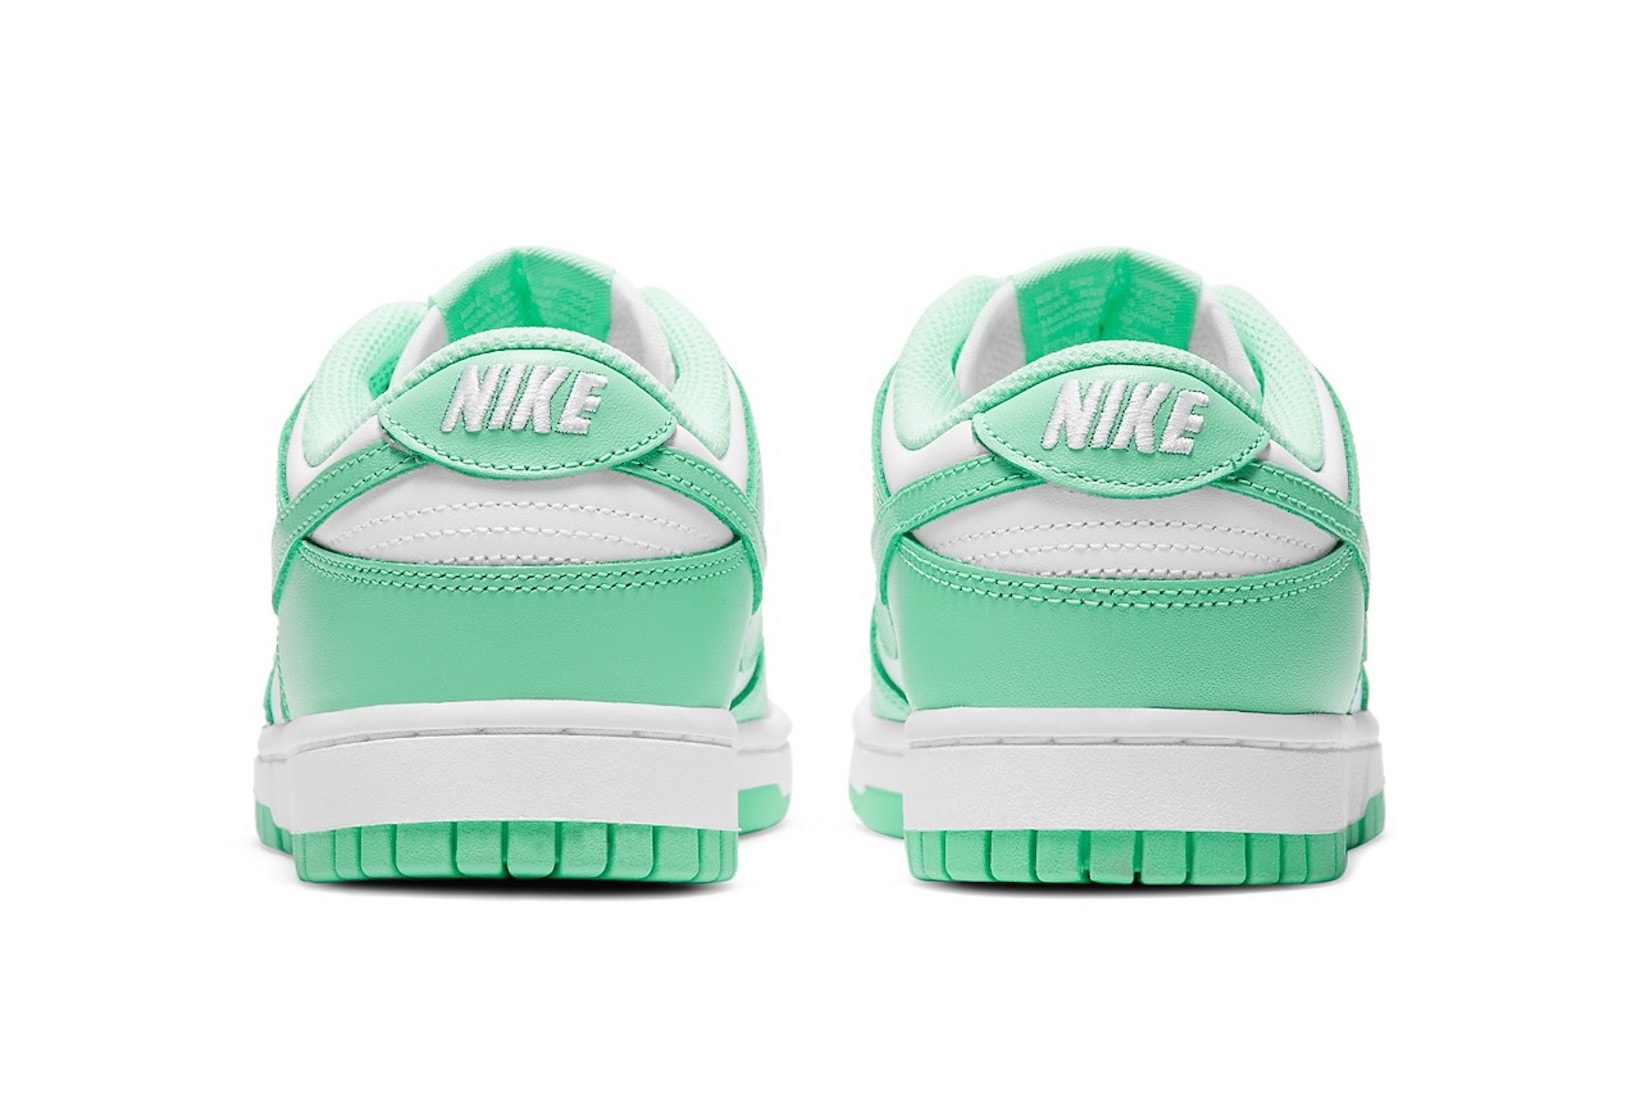 nike dunk low sneakers green glow white colorway footwear kicks shoes sneakerhead heel